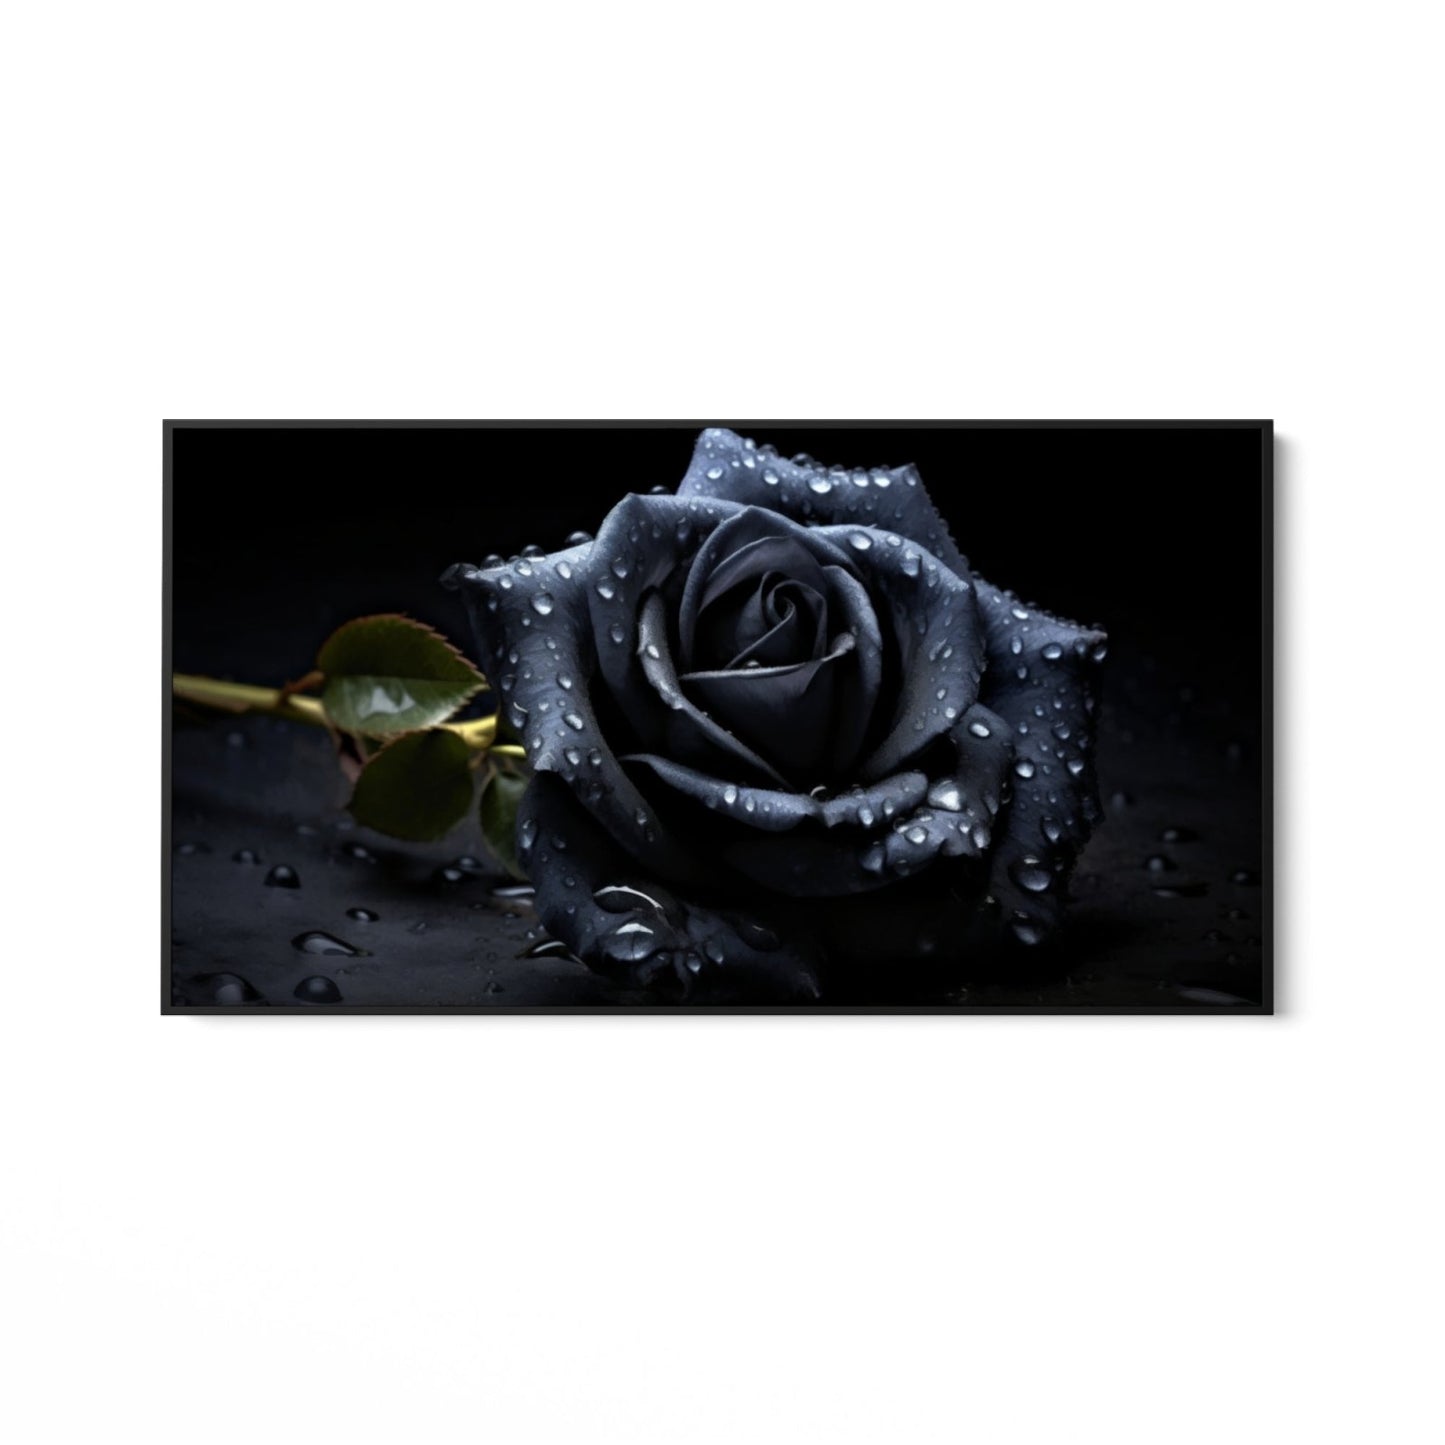 Den svarta rosen